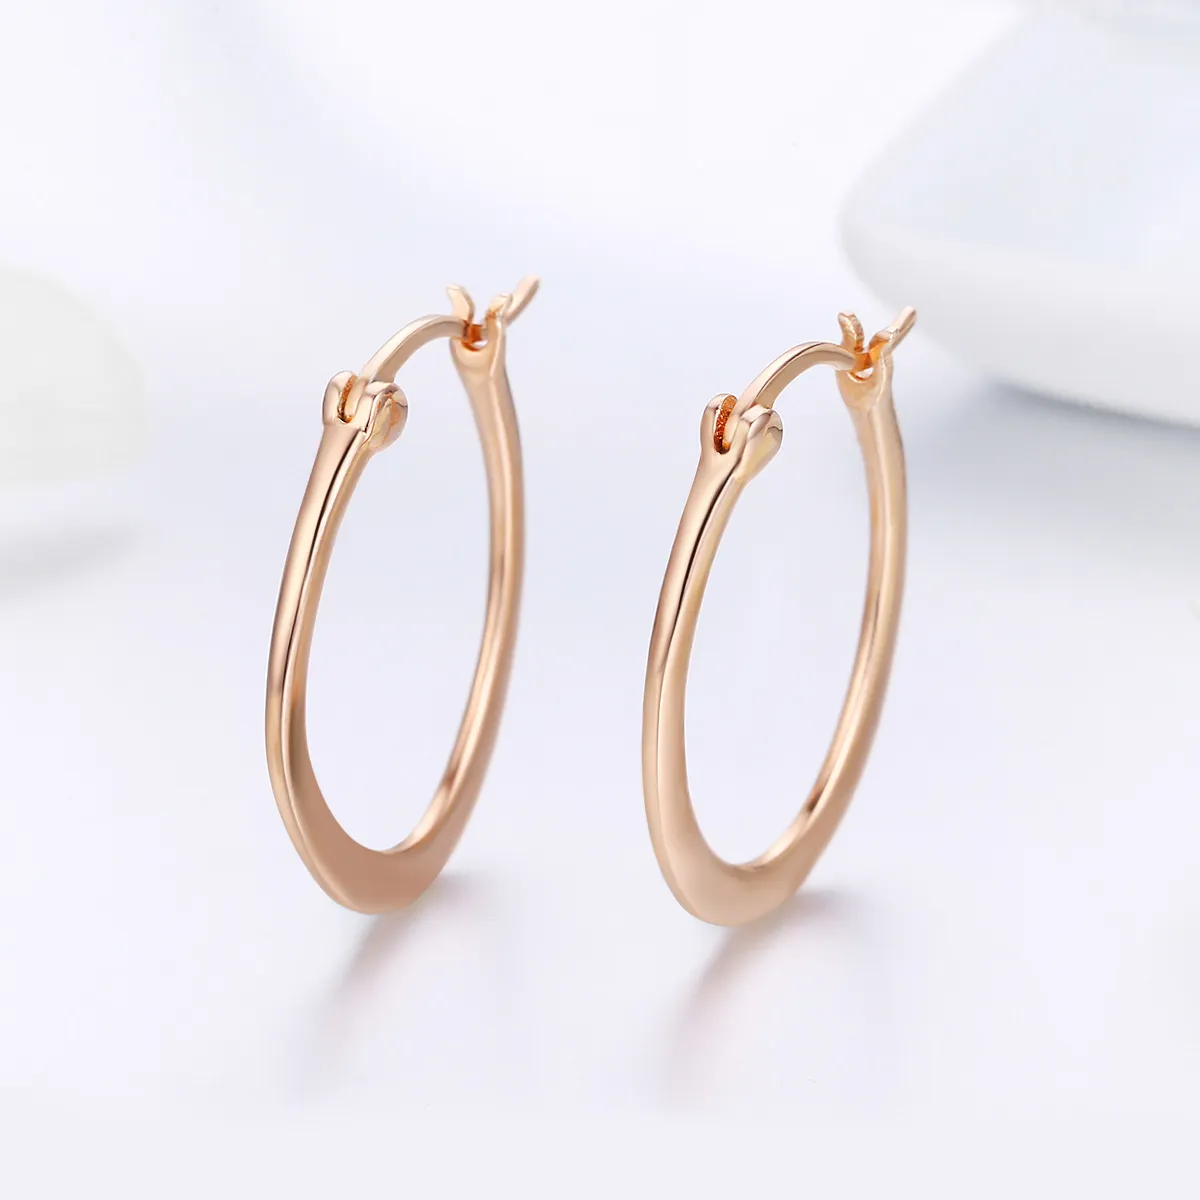 Pandora Style Rose Gold Hoop Earrings - SCE478